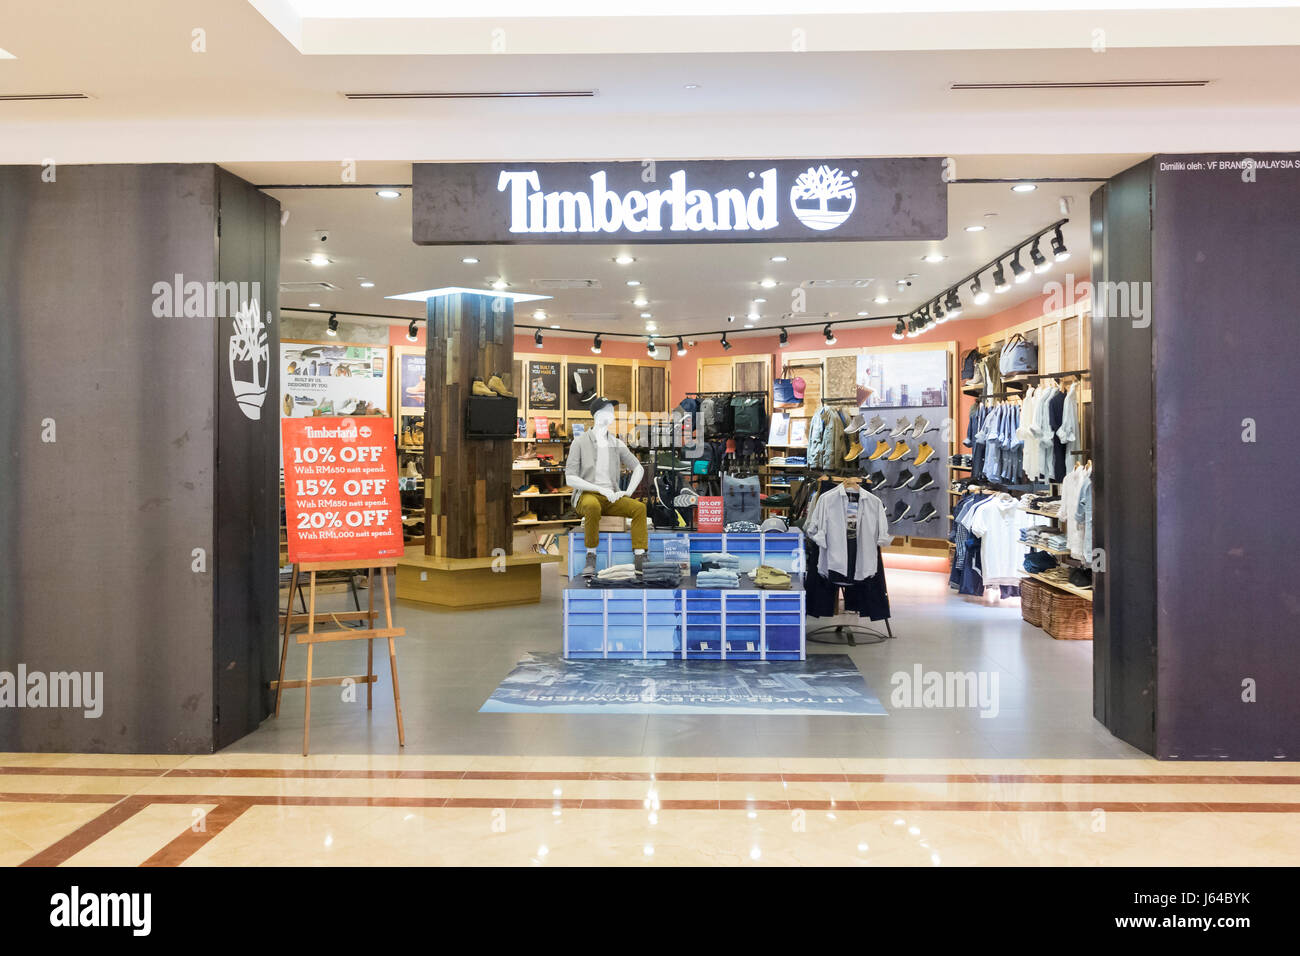 Timberland shop, Malaysia Stock Photo - Alamy